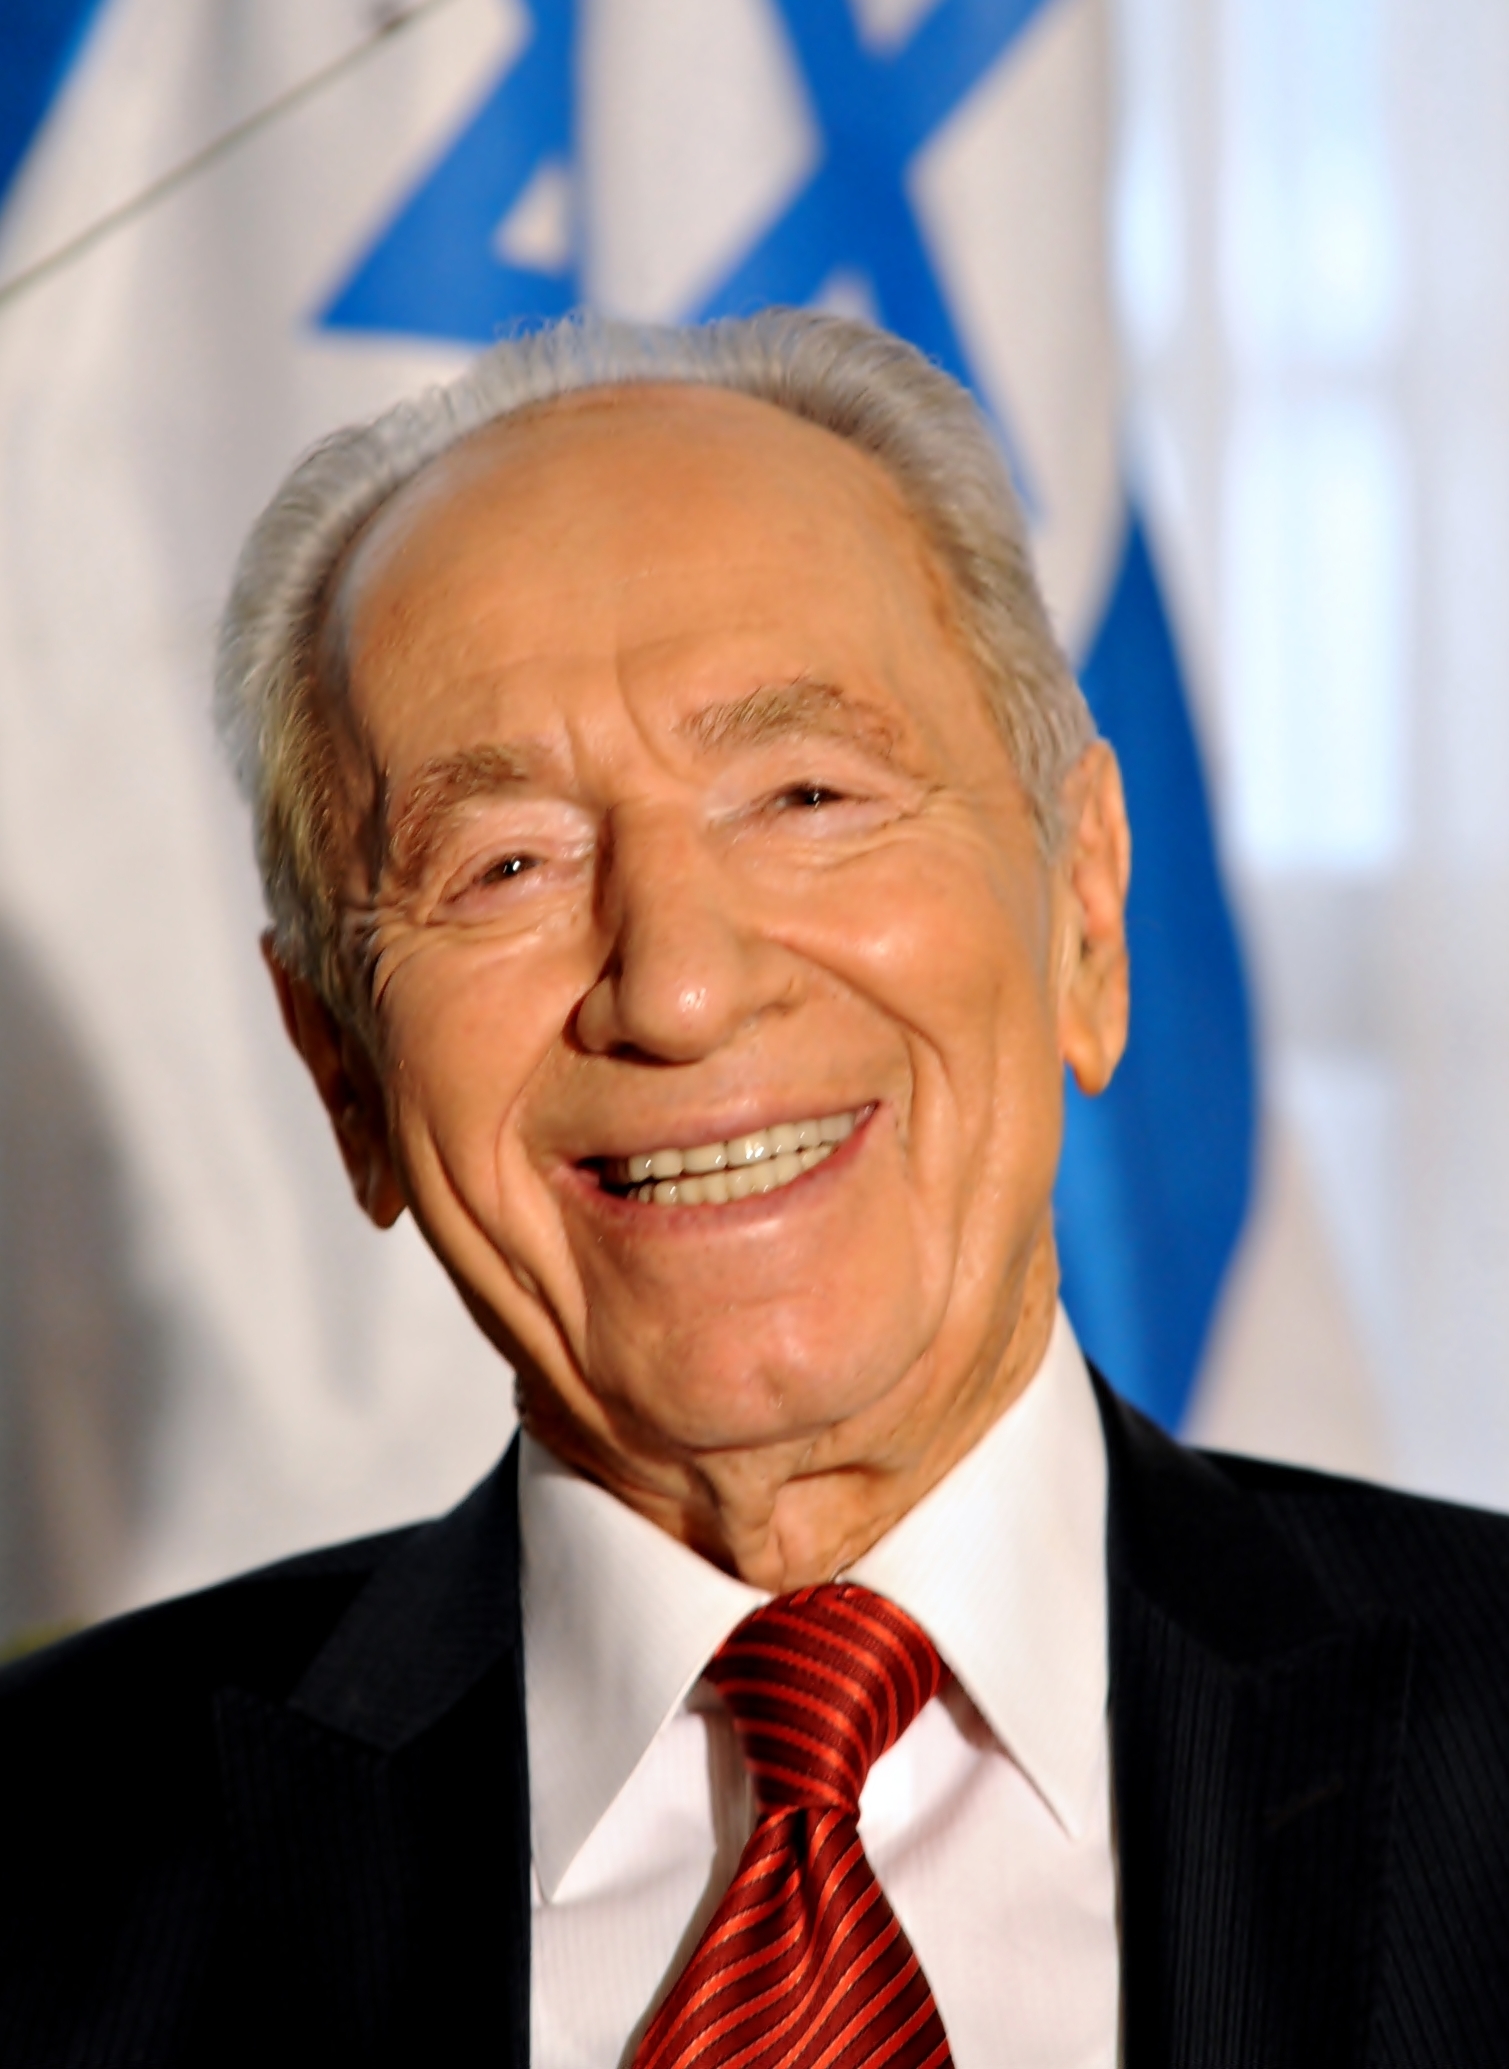 auteur Shimon Peres de la citation Il était le rédacteur en chef de notre article. Il a créé la maison d'édition en hébreu. Il était - je ne dirais pas le «gourou» - mais vraiment il était notre professeur et un homme des plus respectés. J'ai écrit pour le journal du mouvement des jeunes.